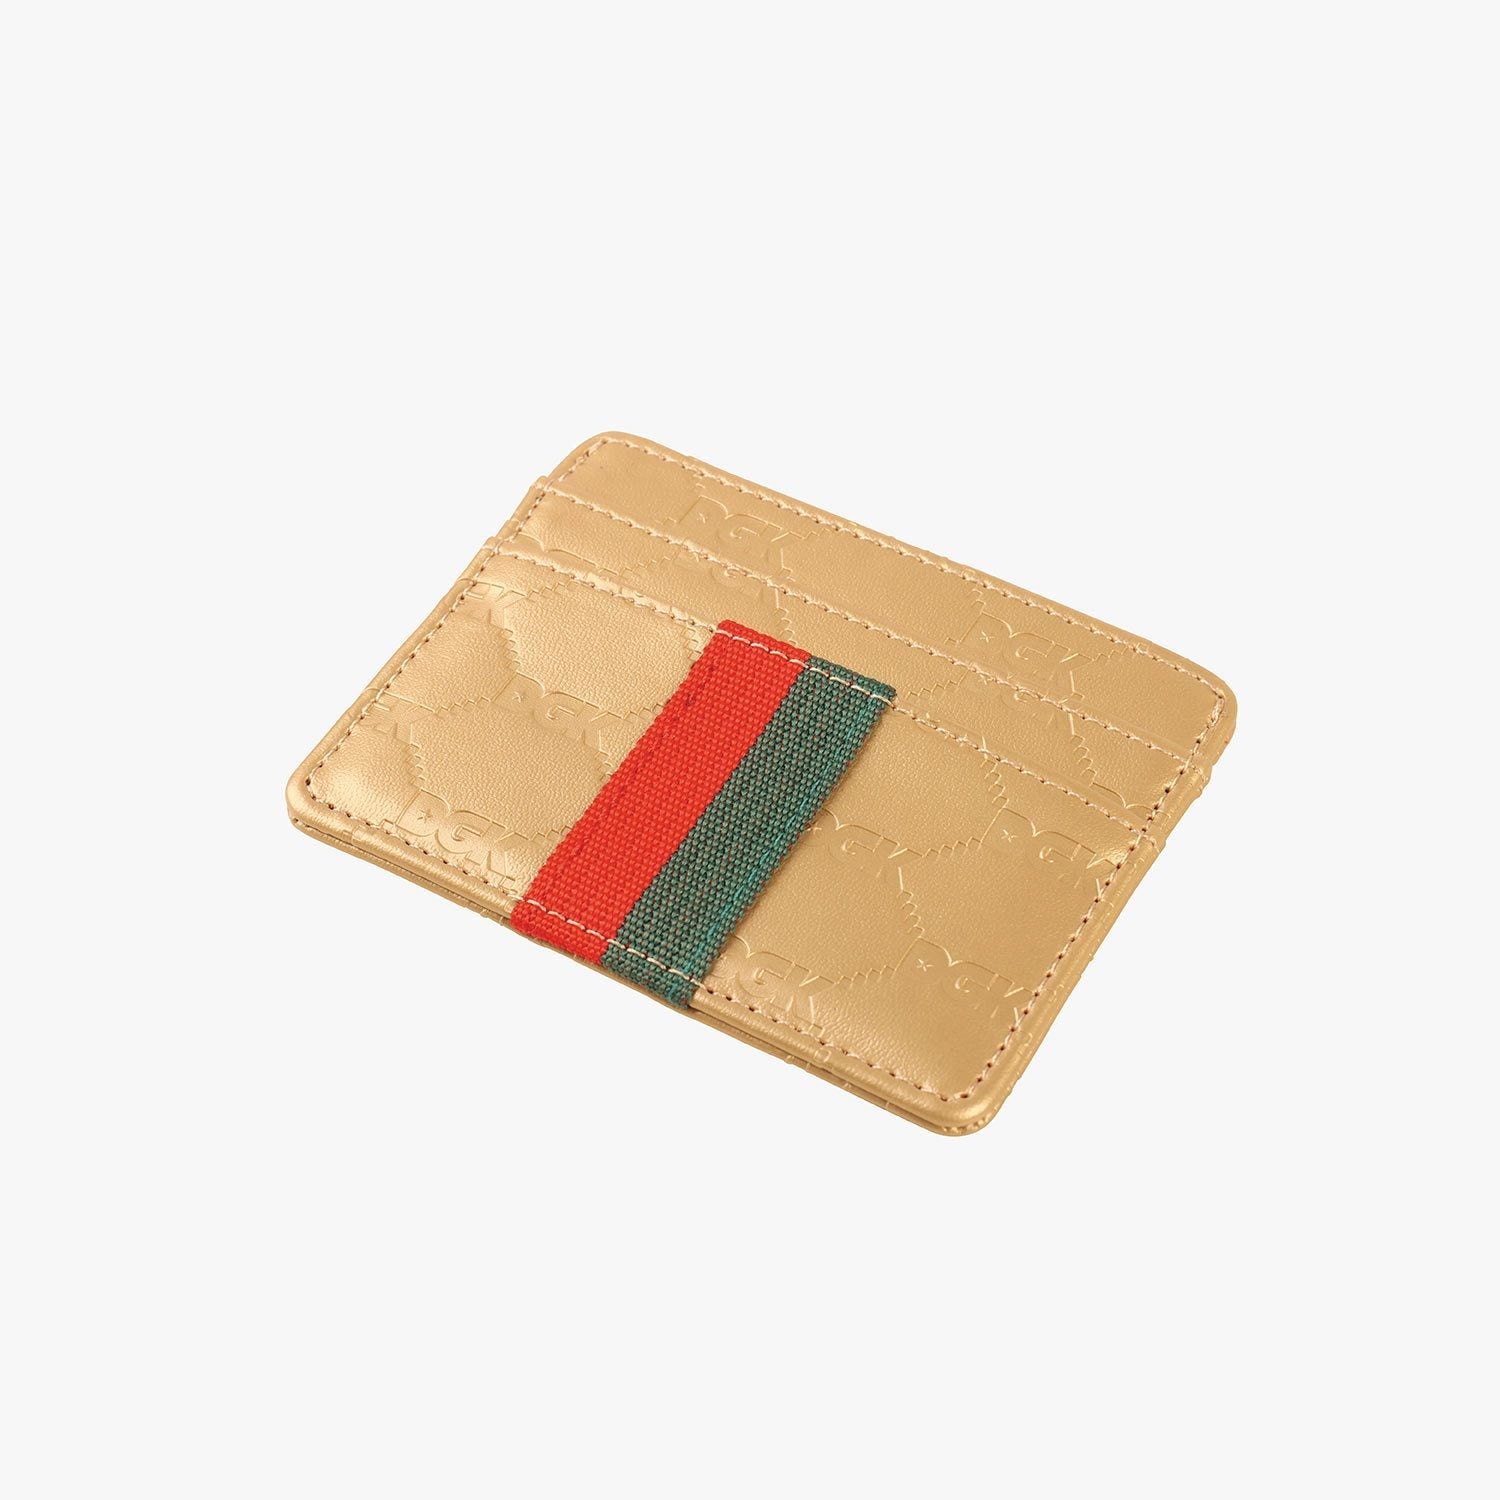 Gold Primo DGK Card Holder Wallet